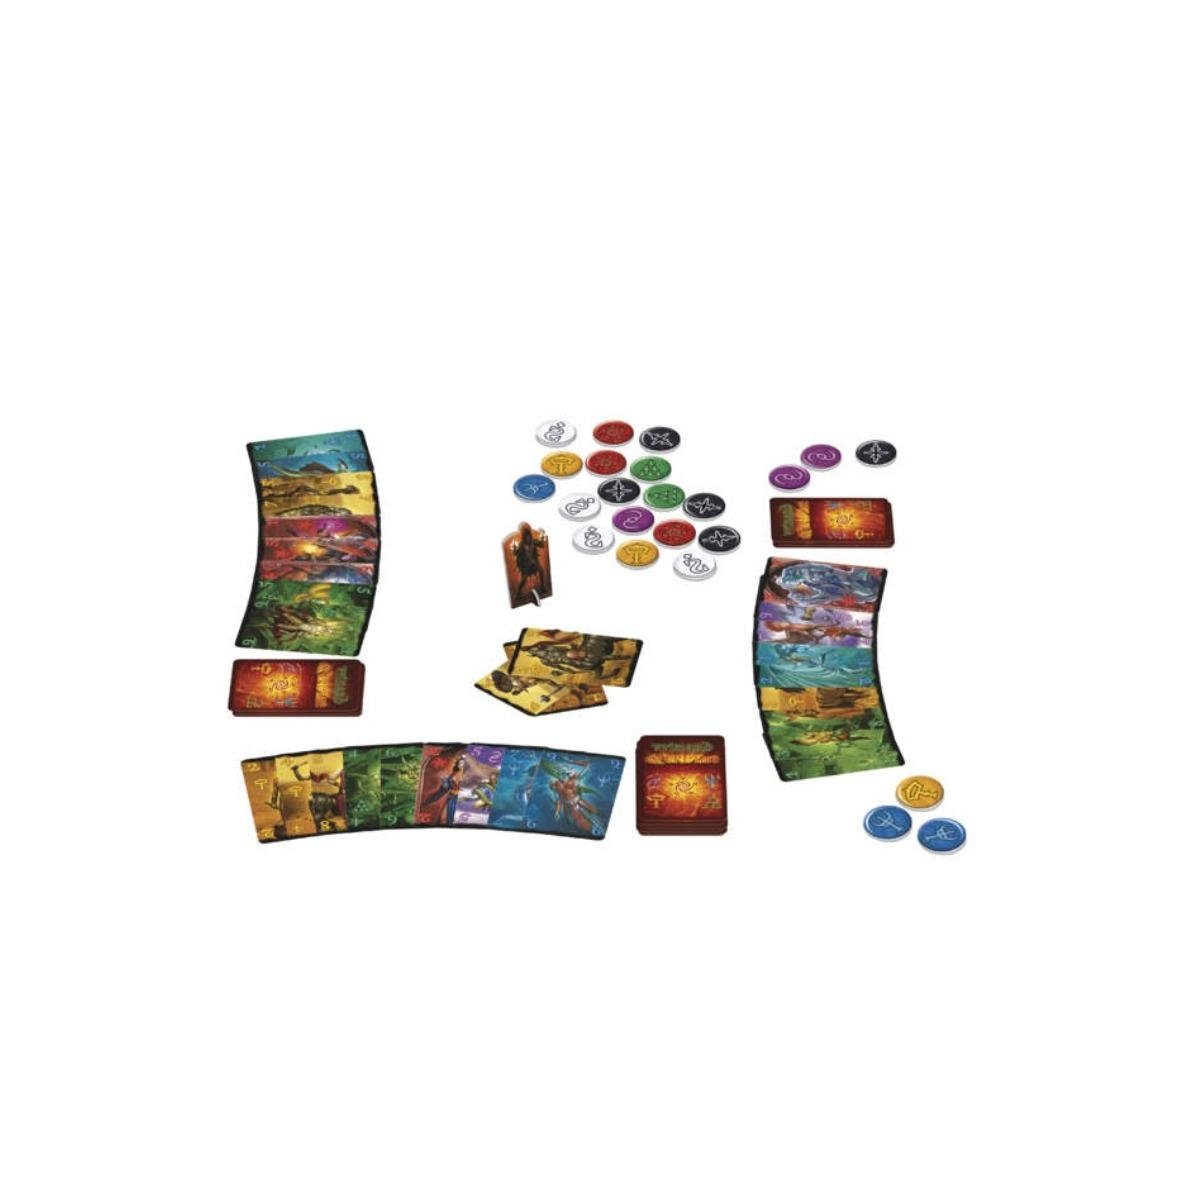 Kartenspiel, 3-5... 6200903 Wizard Familienspiel - - für Extreme, AMIGO Spiel,